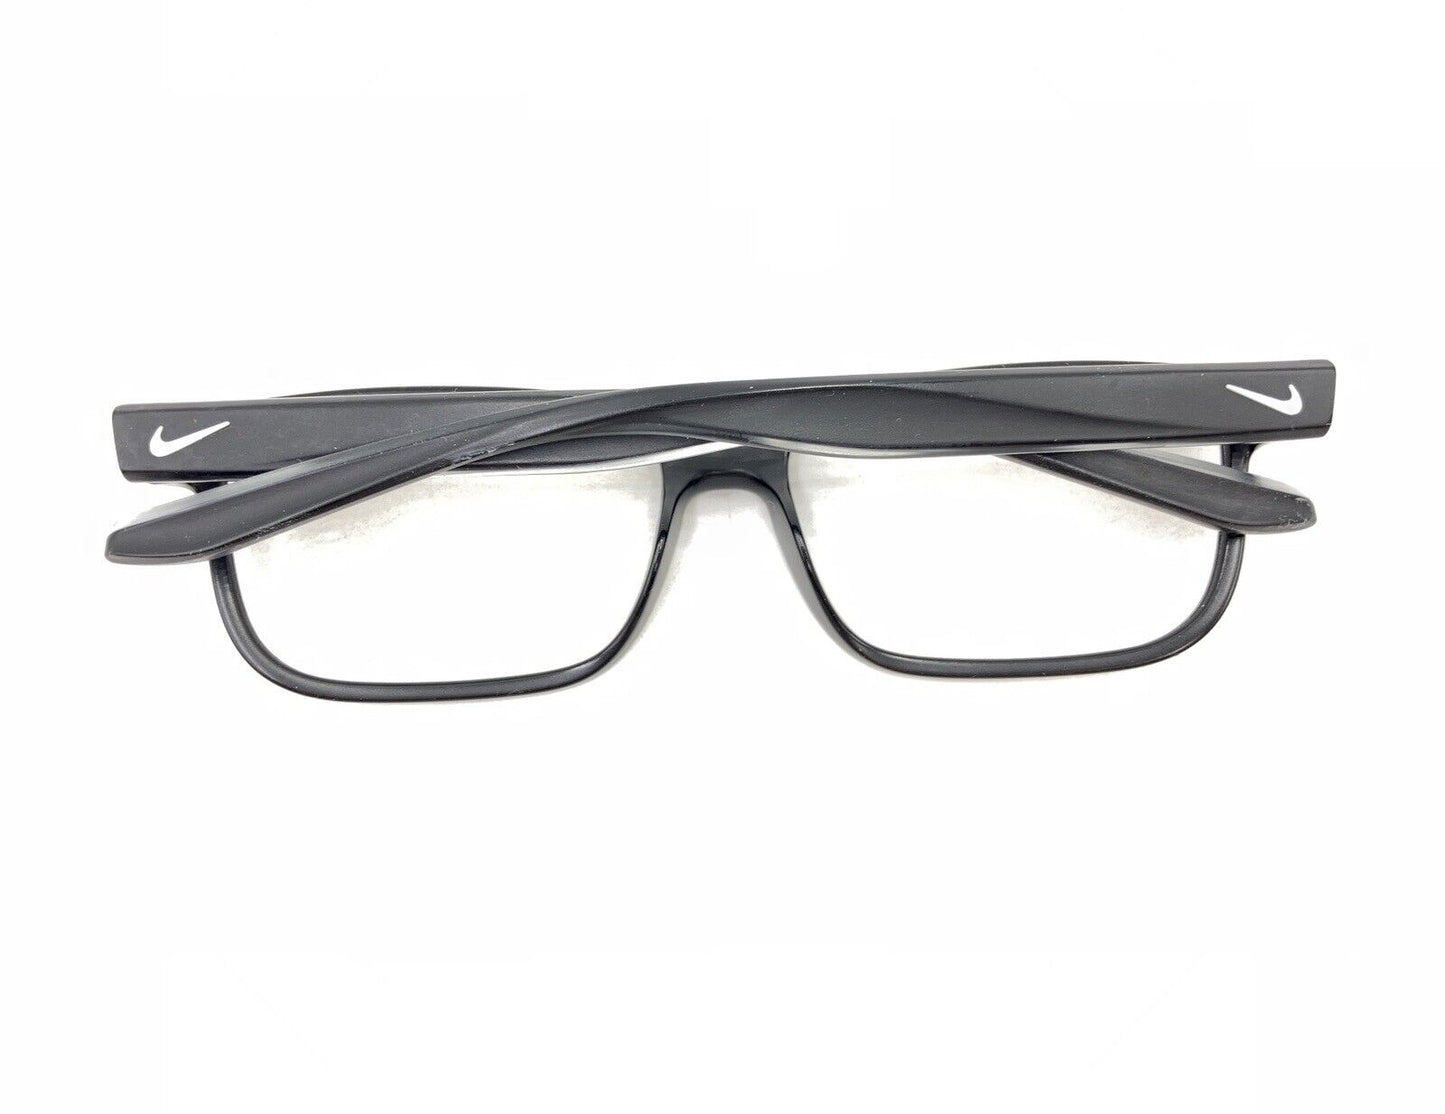 نظارة طبية مستطيلة الشكل من نايكى 7102